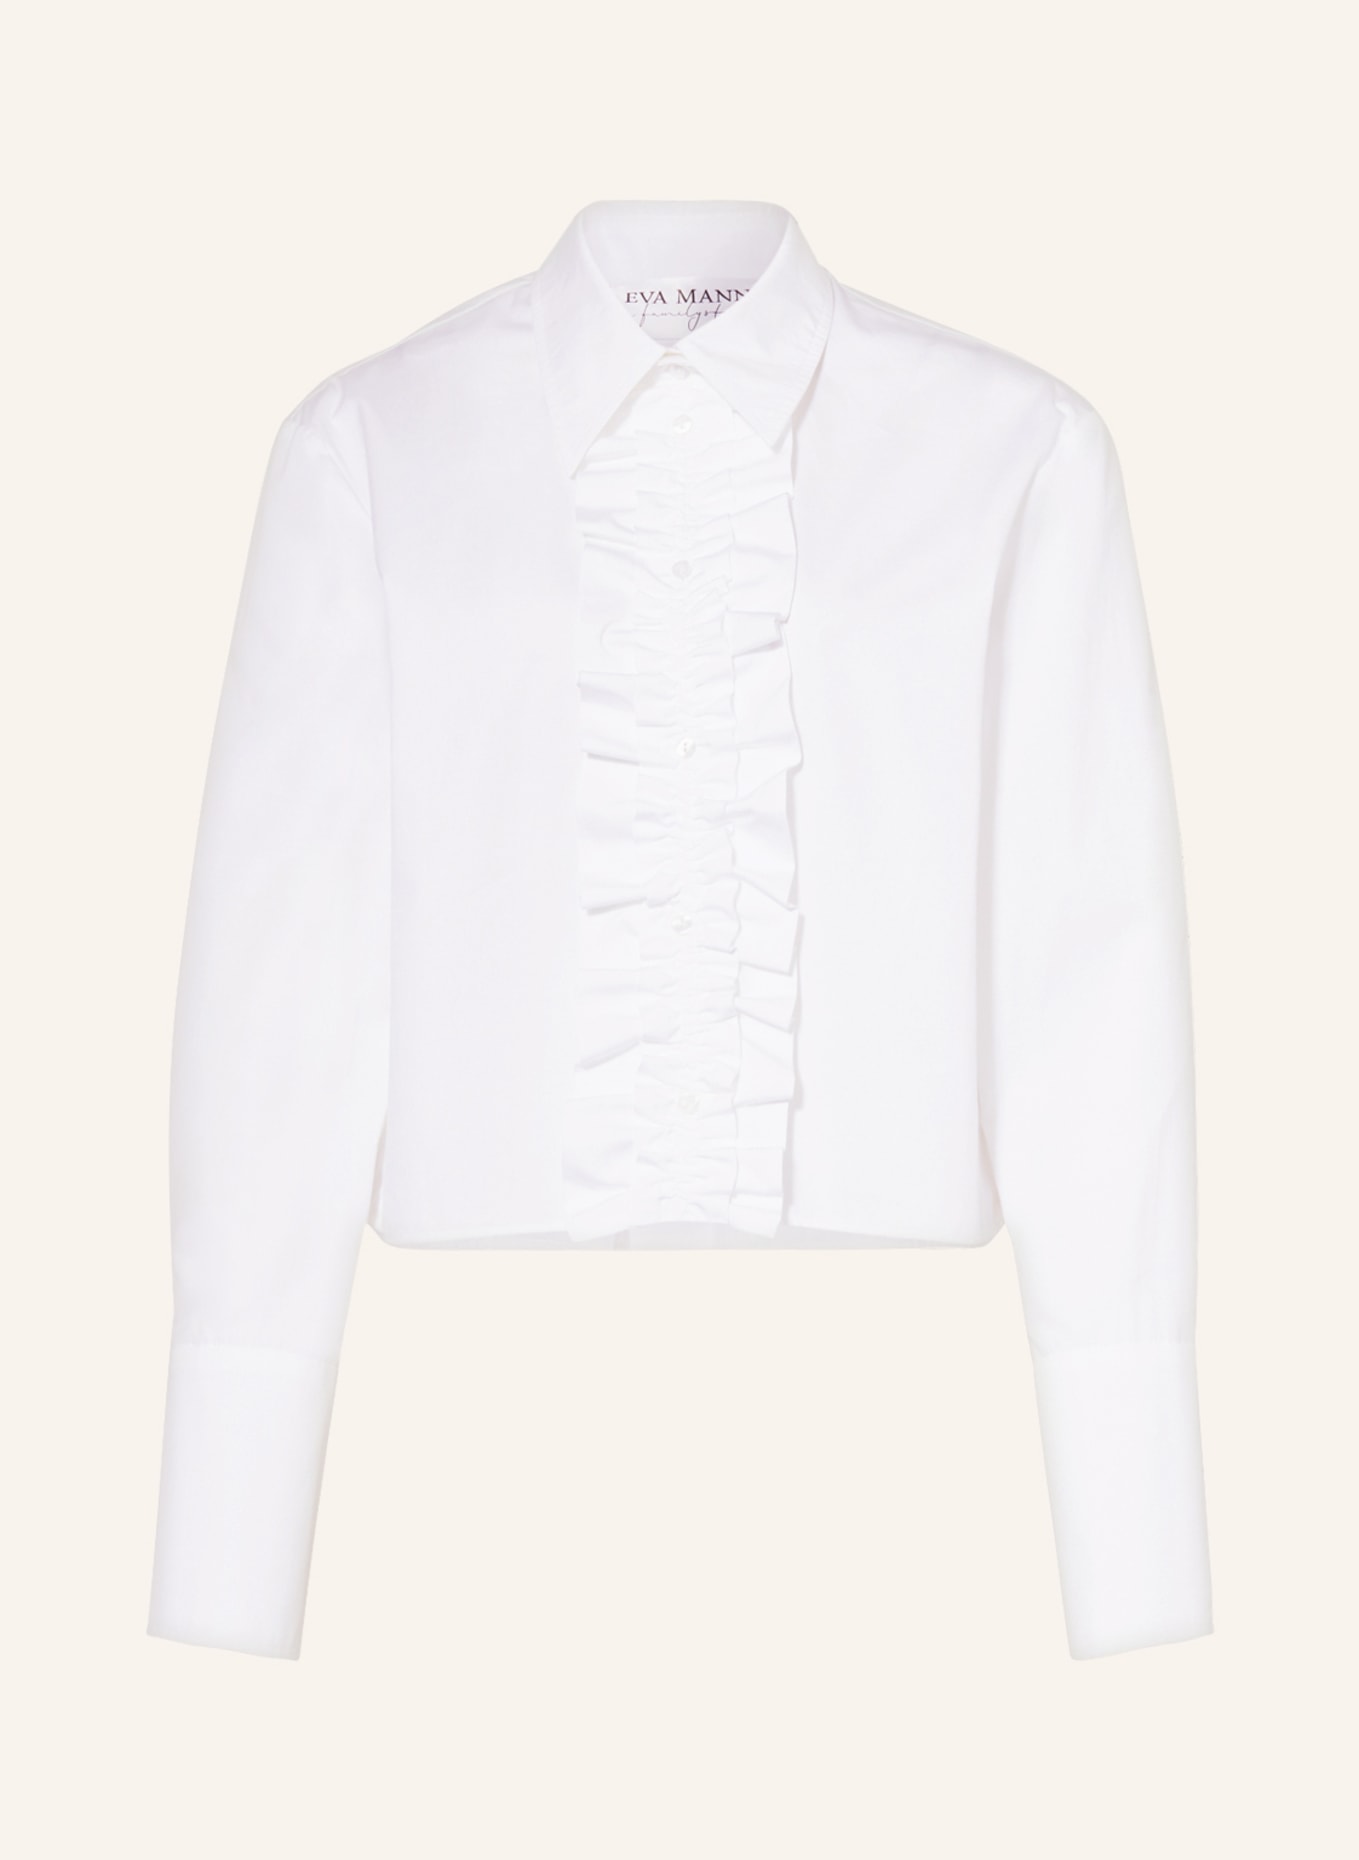 EVA MANN Cropped shirt blouse GITTE WINSTON, Color: WHITE (Image 1)